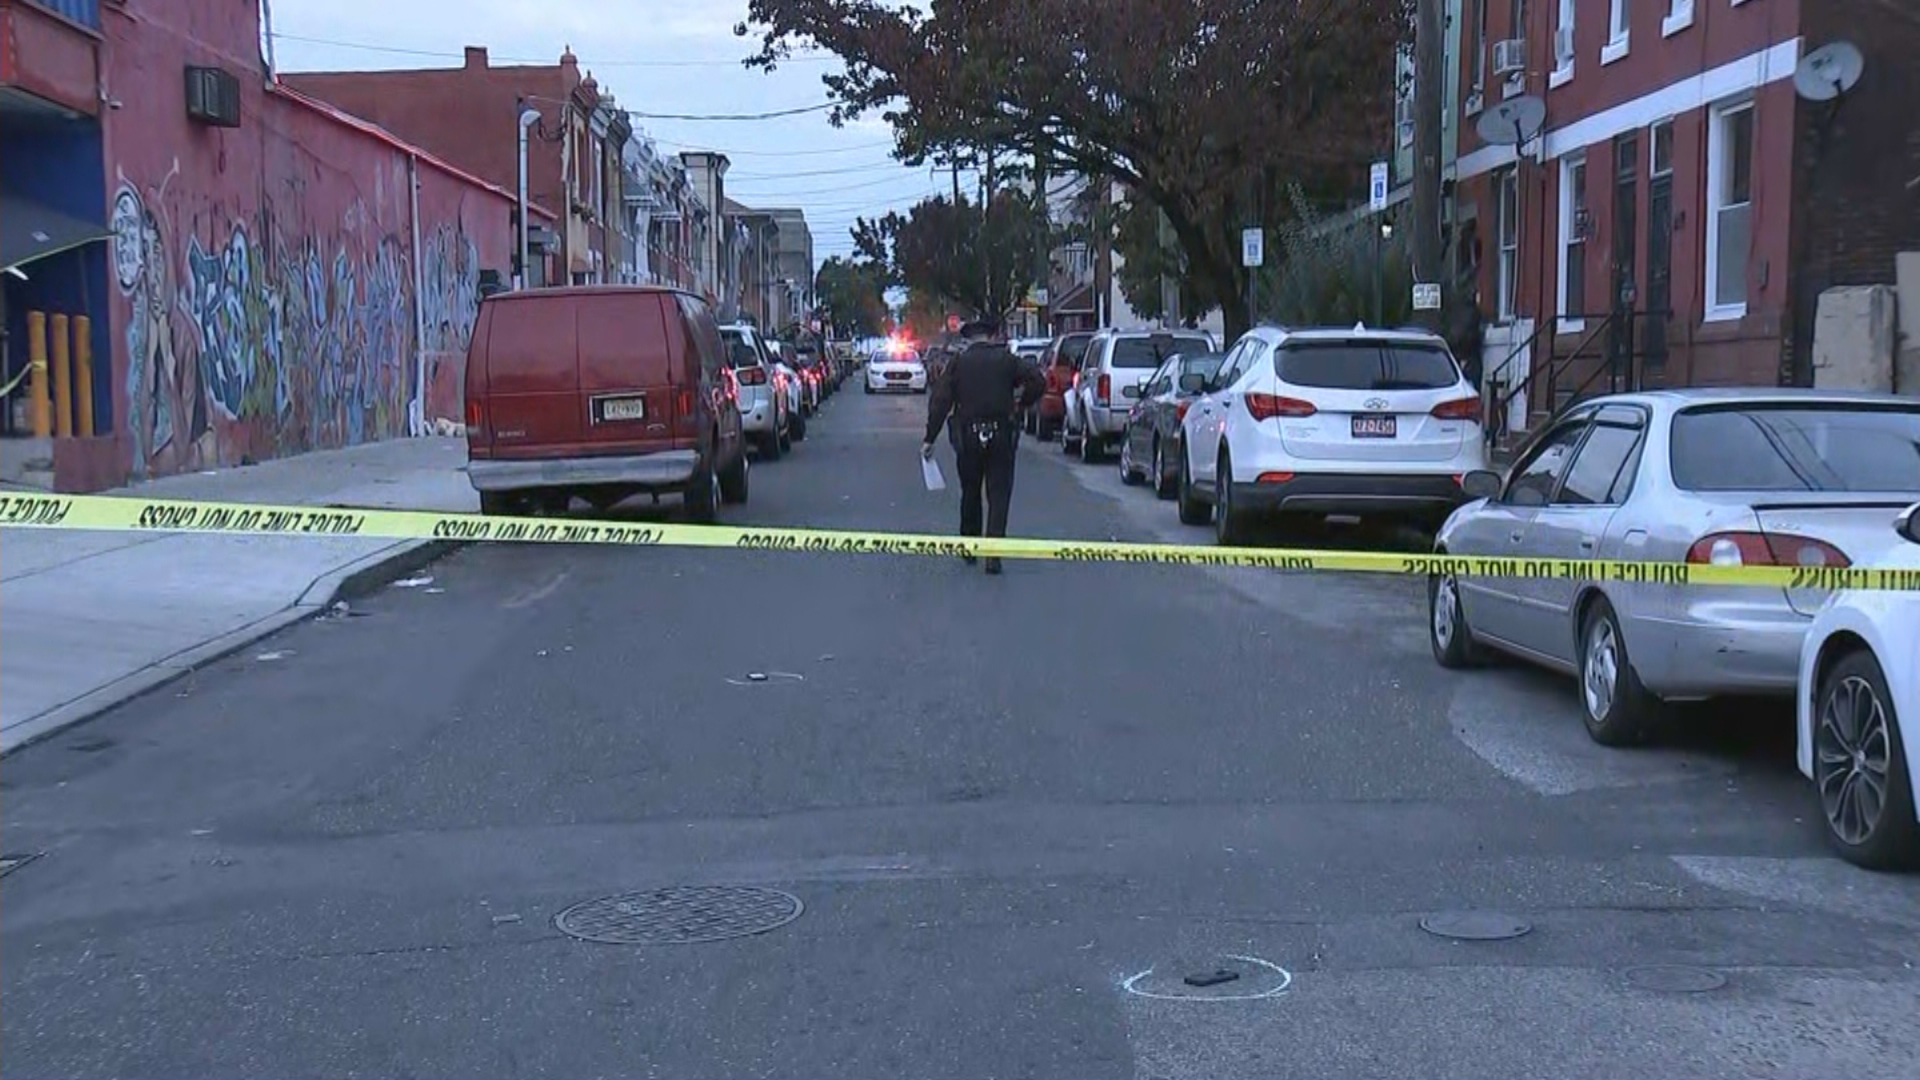 Police: 6 People Shot In Philadelphia’s Kensington Section